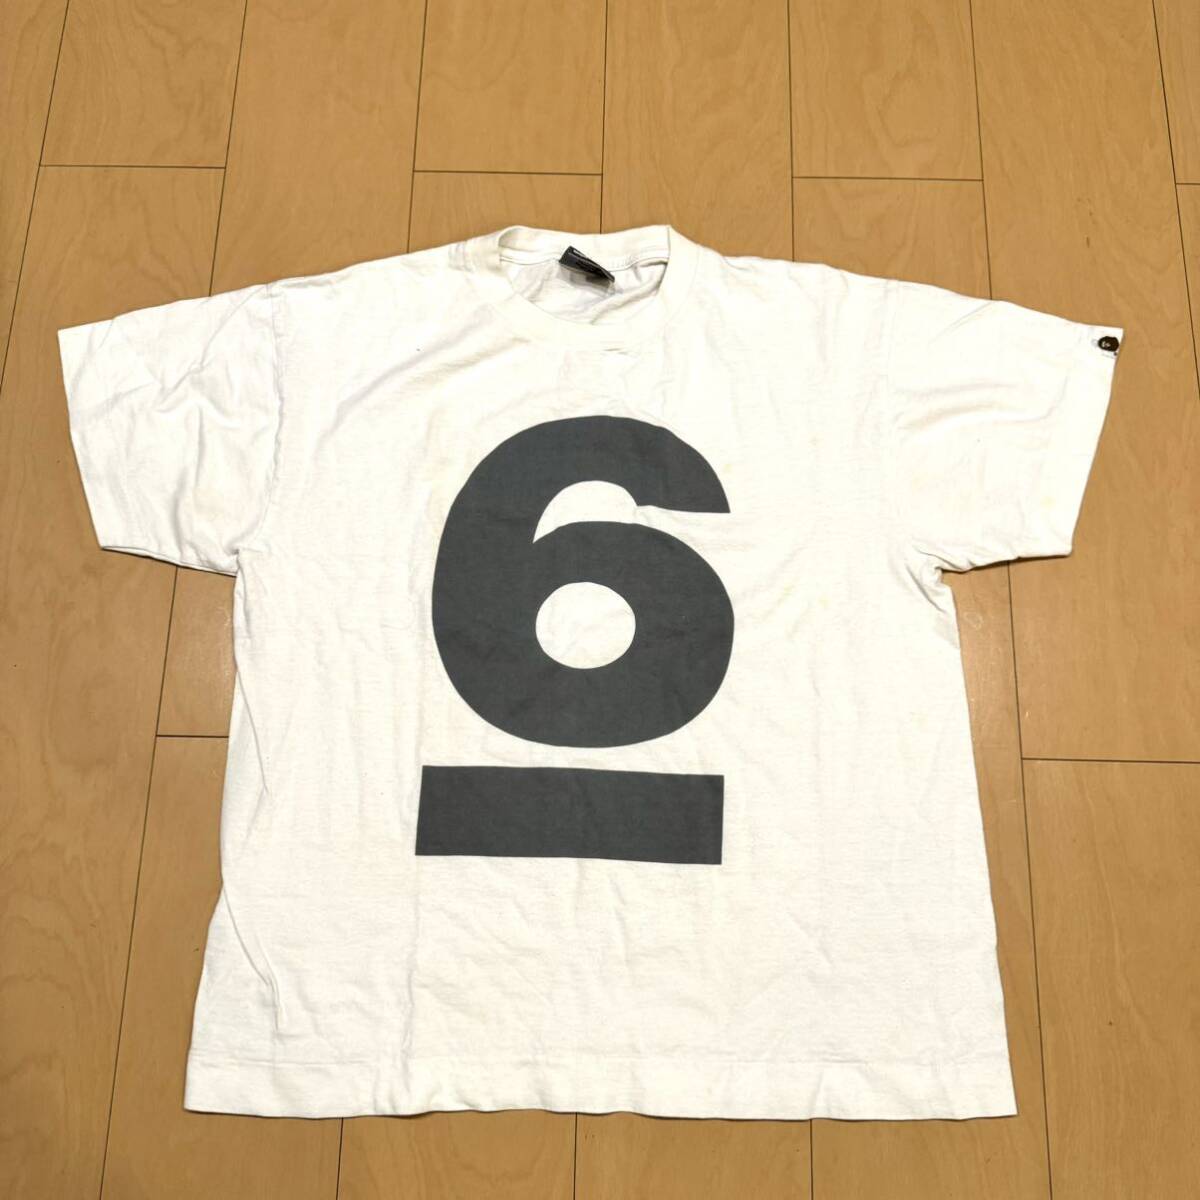 激レア裏原ビンテージ! A BATHING APE 原宿Nowhere ６周年記念Tシャツ サイズL ホワイト 美品格安!の画像1